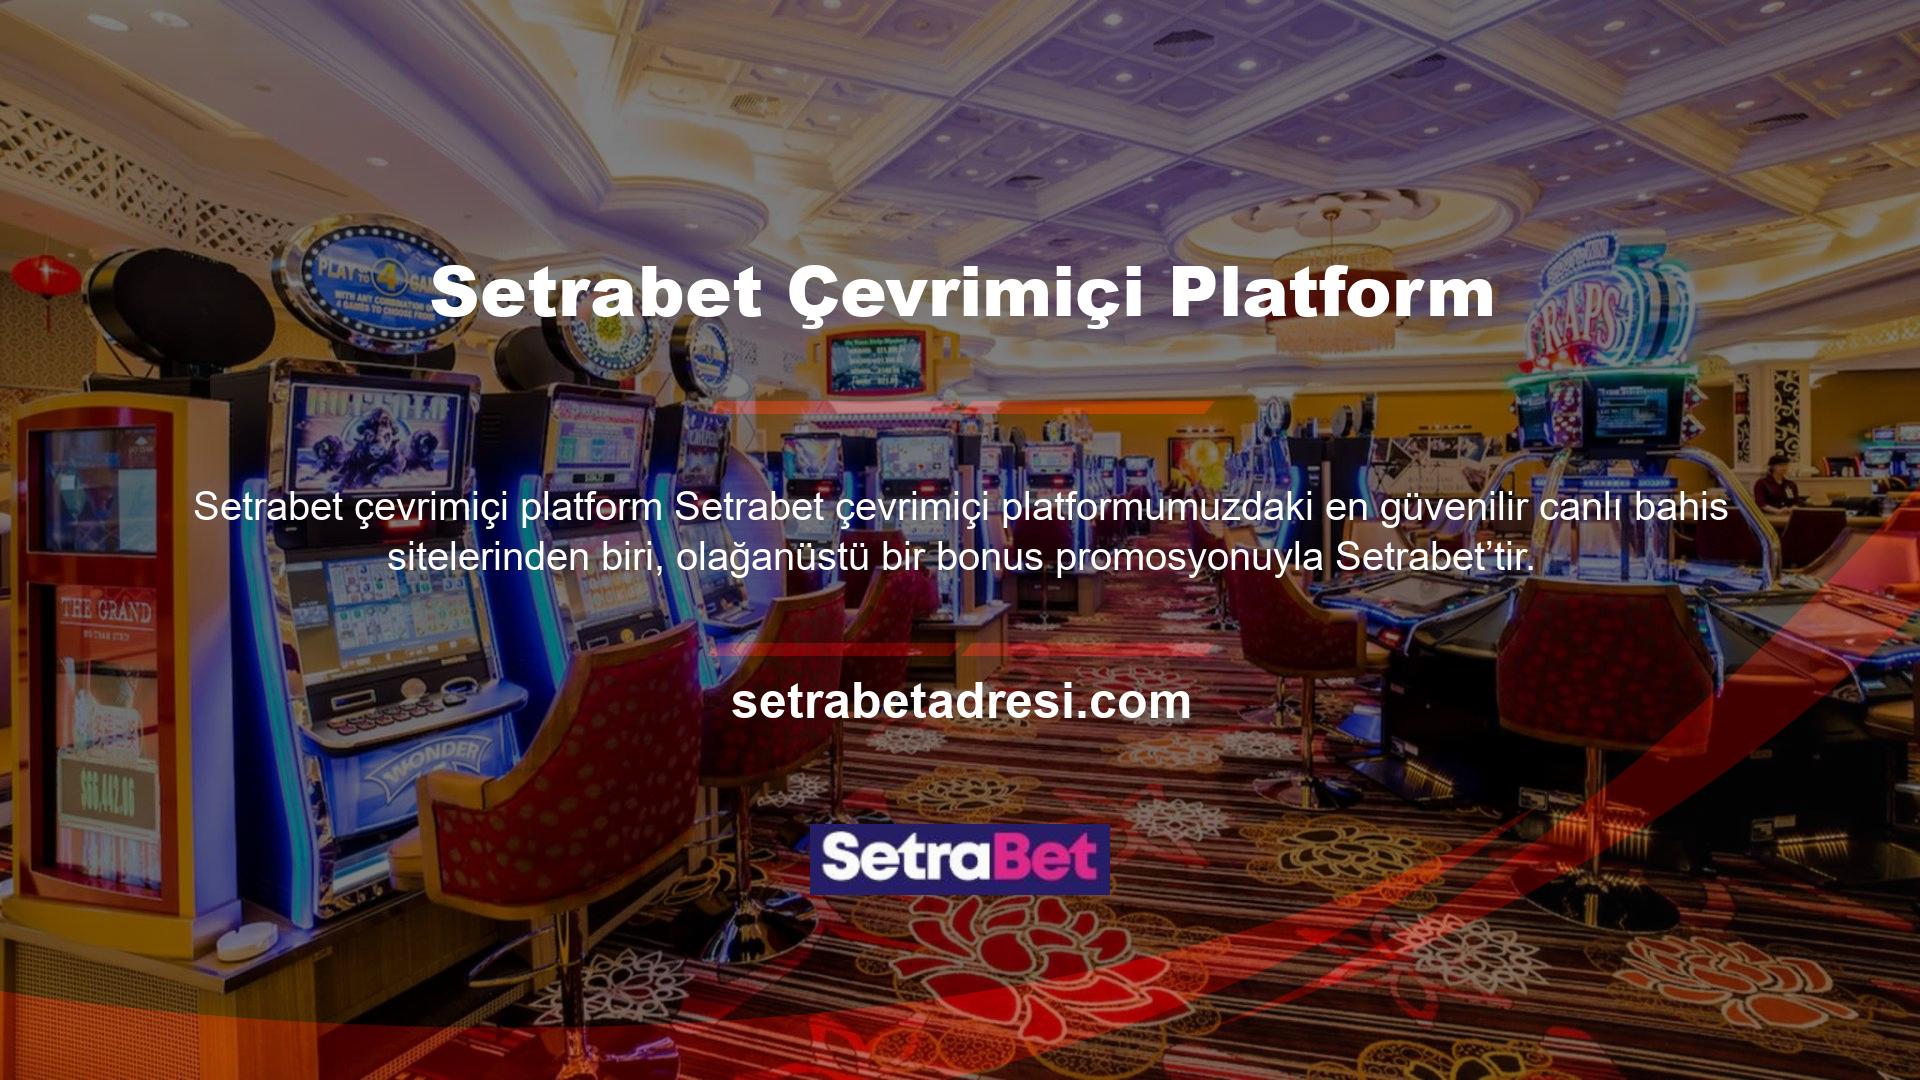 Setrabet pazara girme izni verildi ve özel oyun platformları sunan güvenilir bir altyapı sistemi sağlayıcısıyla iş birliği yaptı